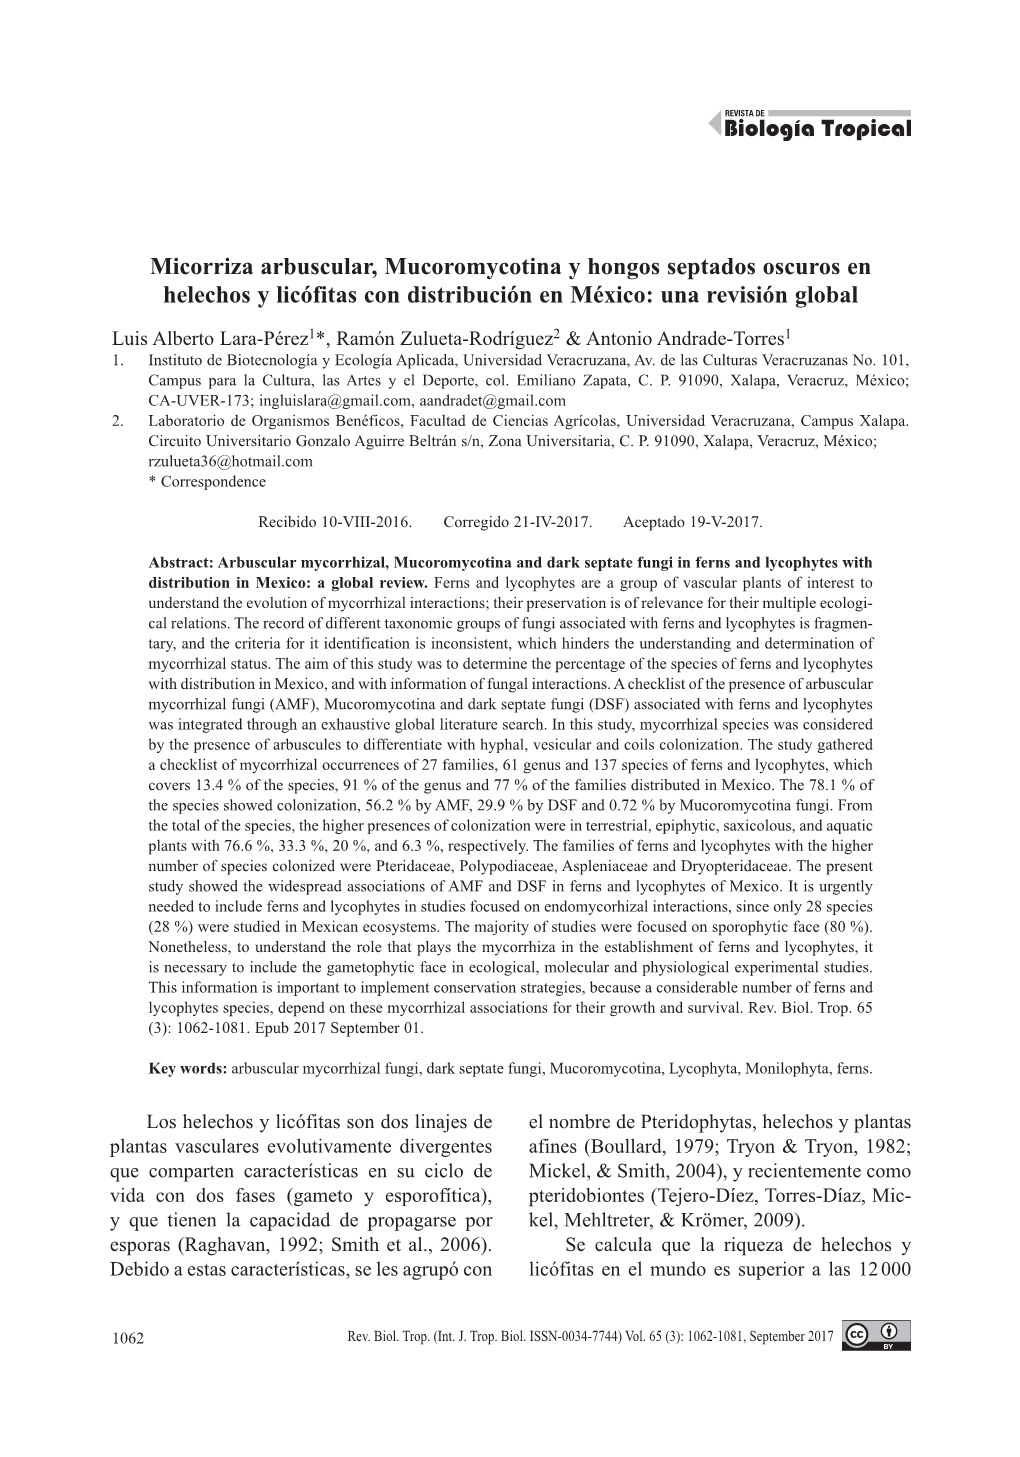 Micorriza Arbuscular, Mucoromycotina Y Hongos Septados Oscuros En Helechos Y Licófitas Con Distribución En México: Una Revisión Global